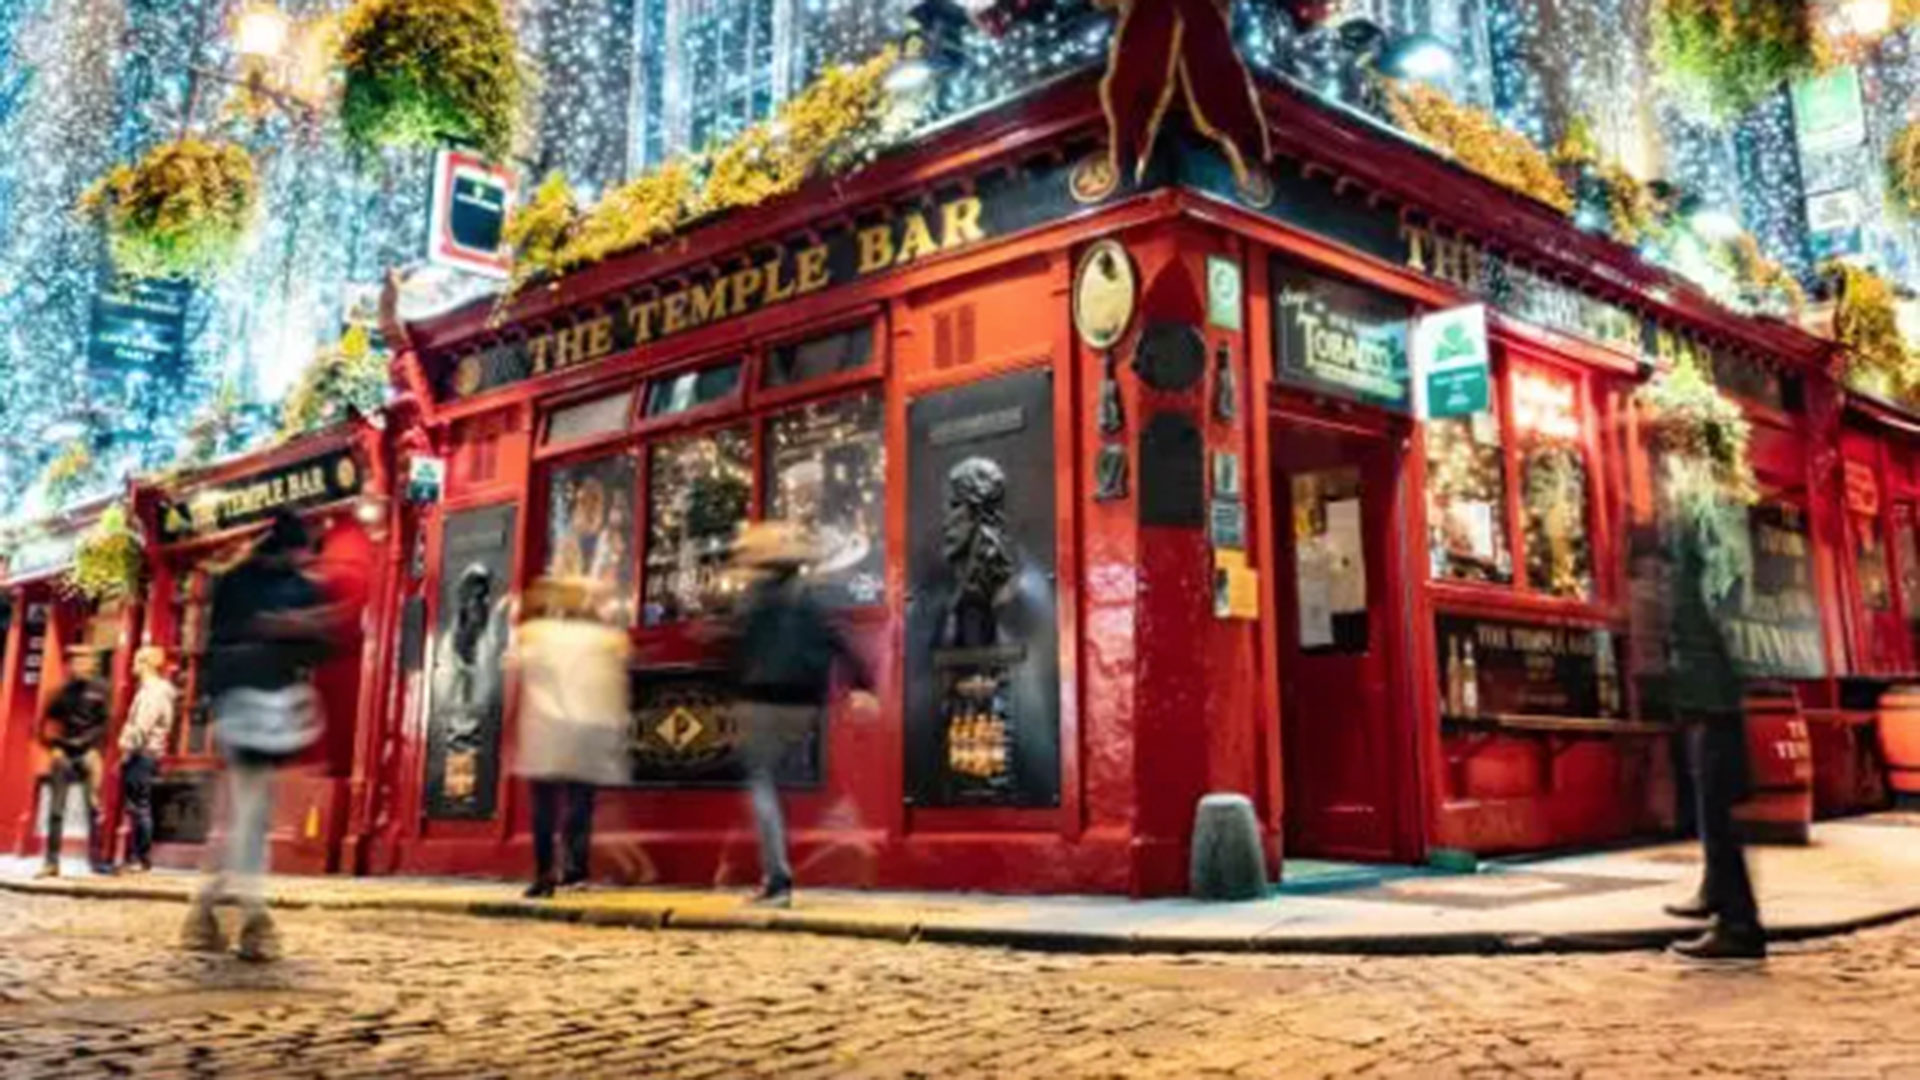 El tradicional recorrido por 12 bares de Dublin es una idea inspirada en la canción “The Twelve Days of Christmas” y es una de las actividades navideñas irlandesas que más adeptos reúne